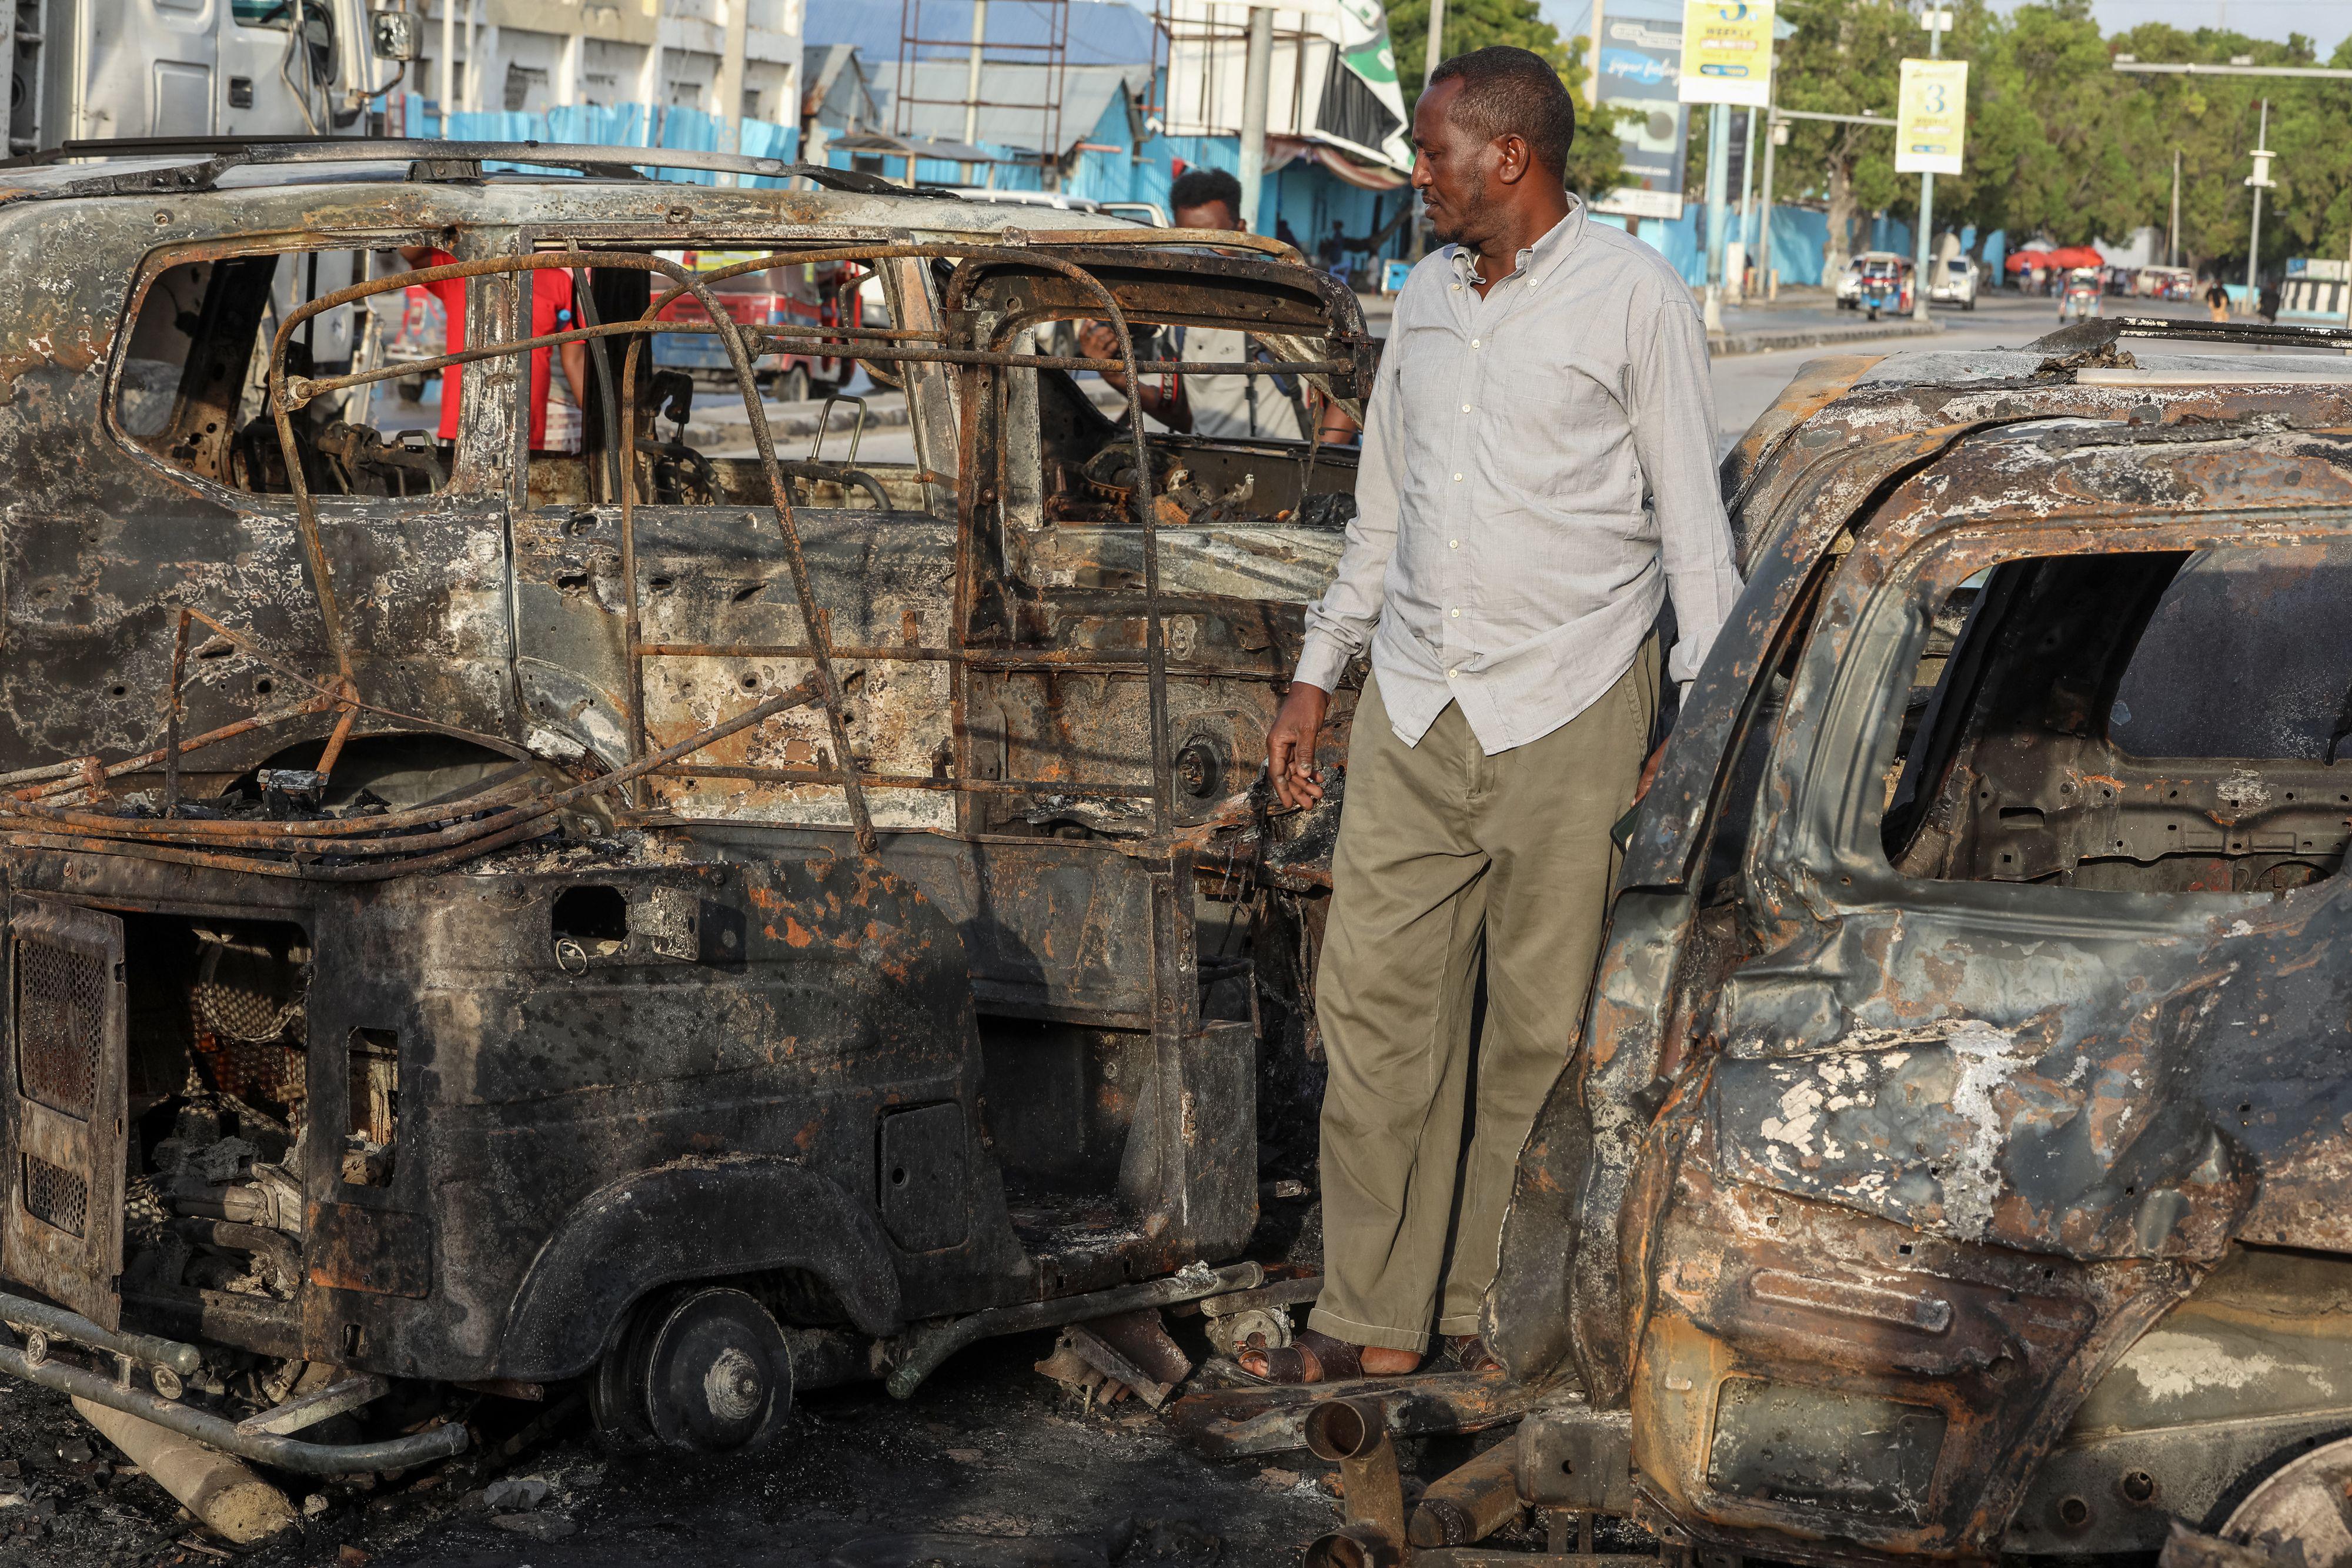 Somalia - autobomba in ristorante durante finale Euro 2024: 5 morti